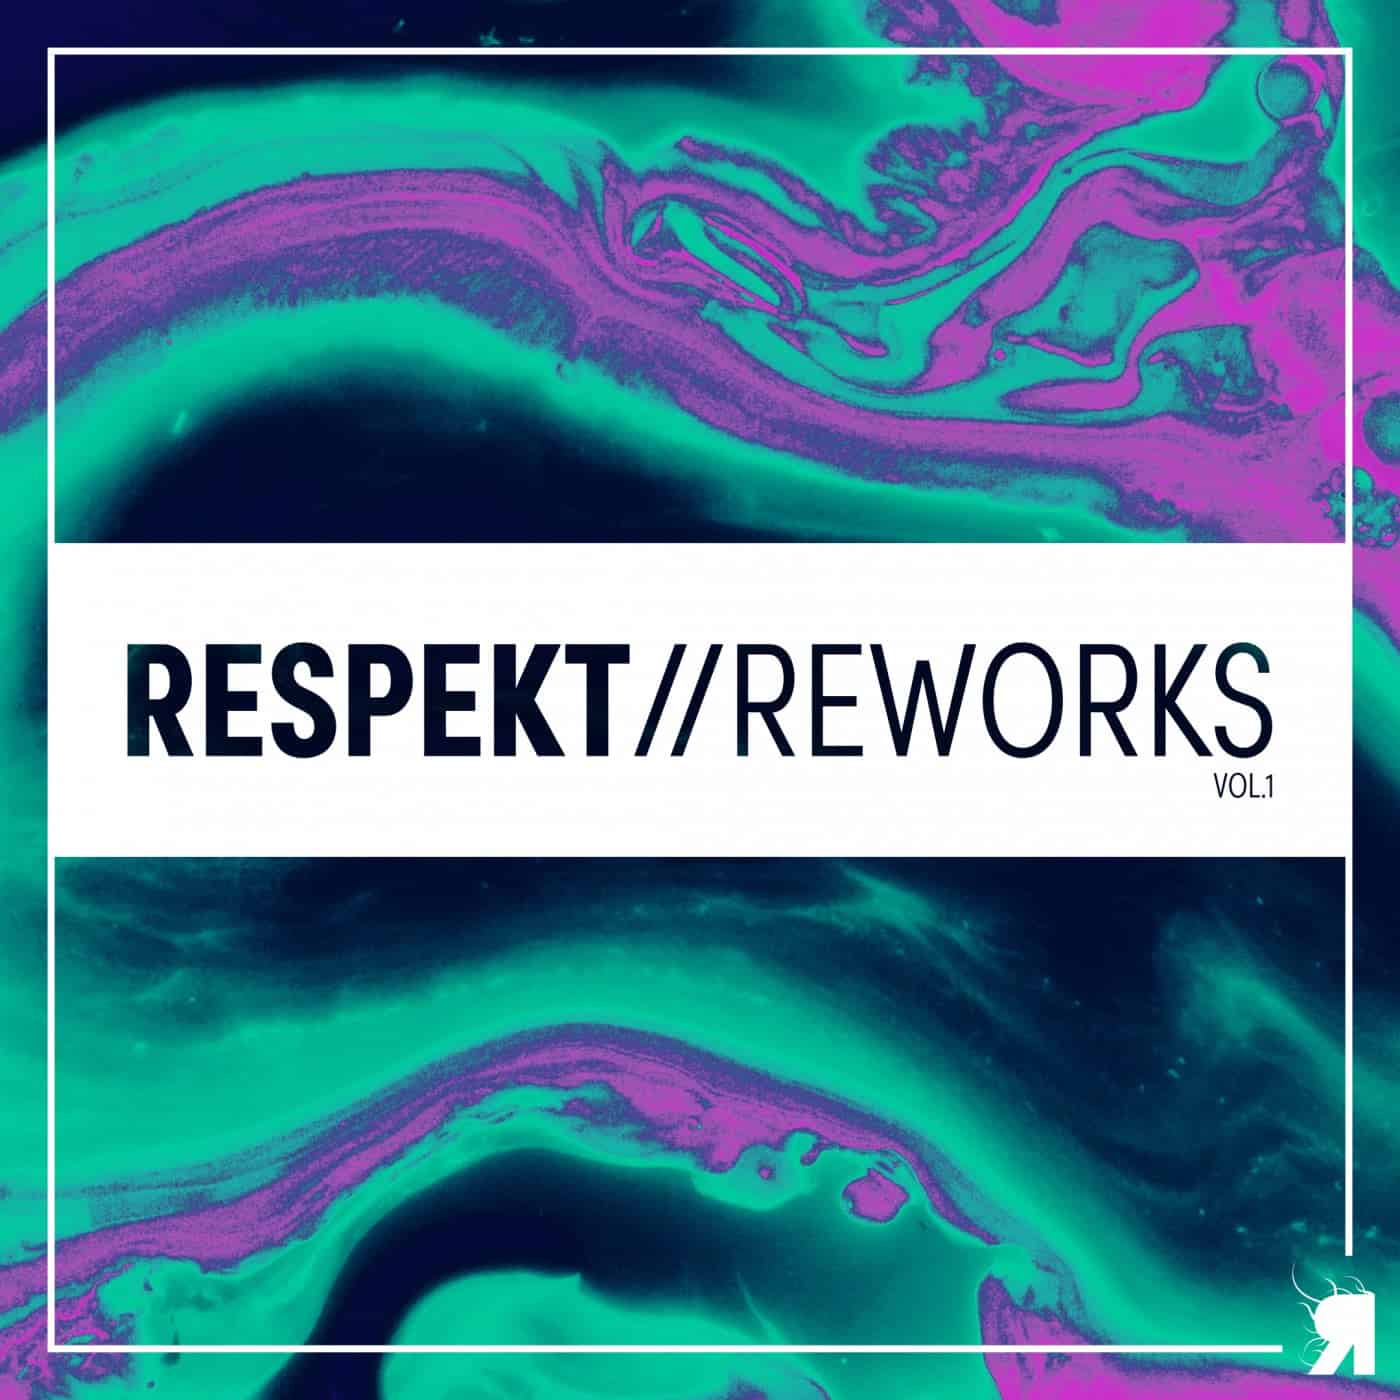 Download Respekt Reworks, Vol. 1 on Electrobuzz